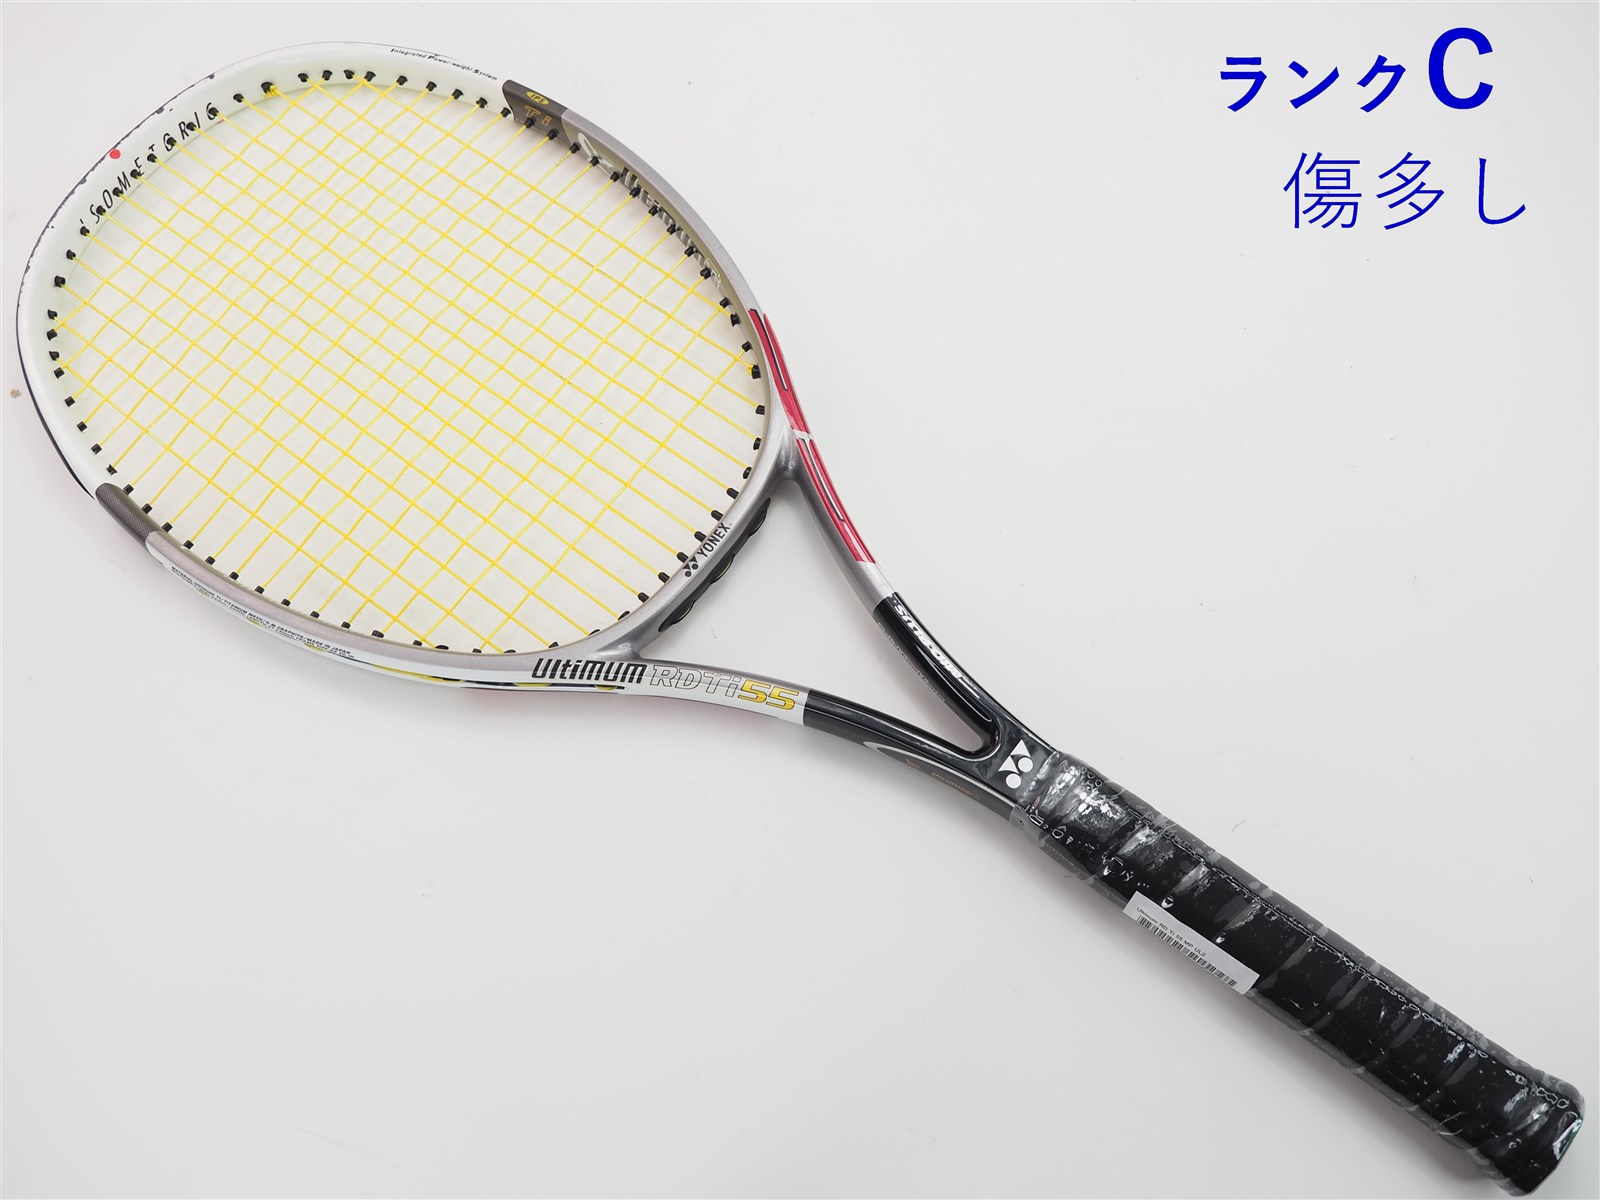 新品】YONEX テニスラケット Ultimum【RDTi55】-